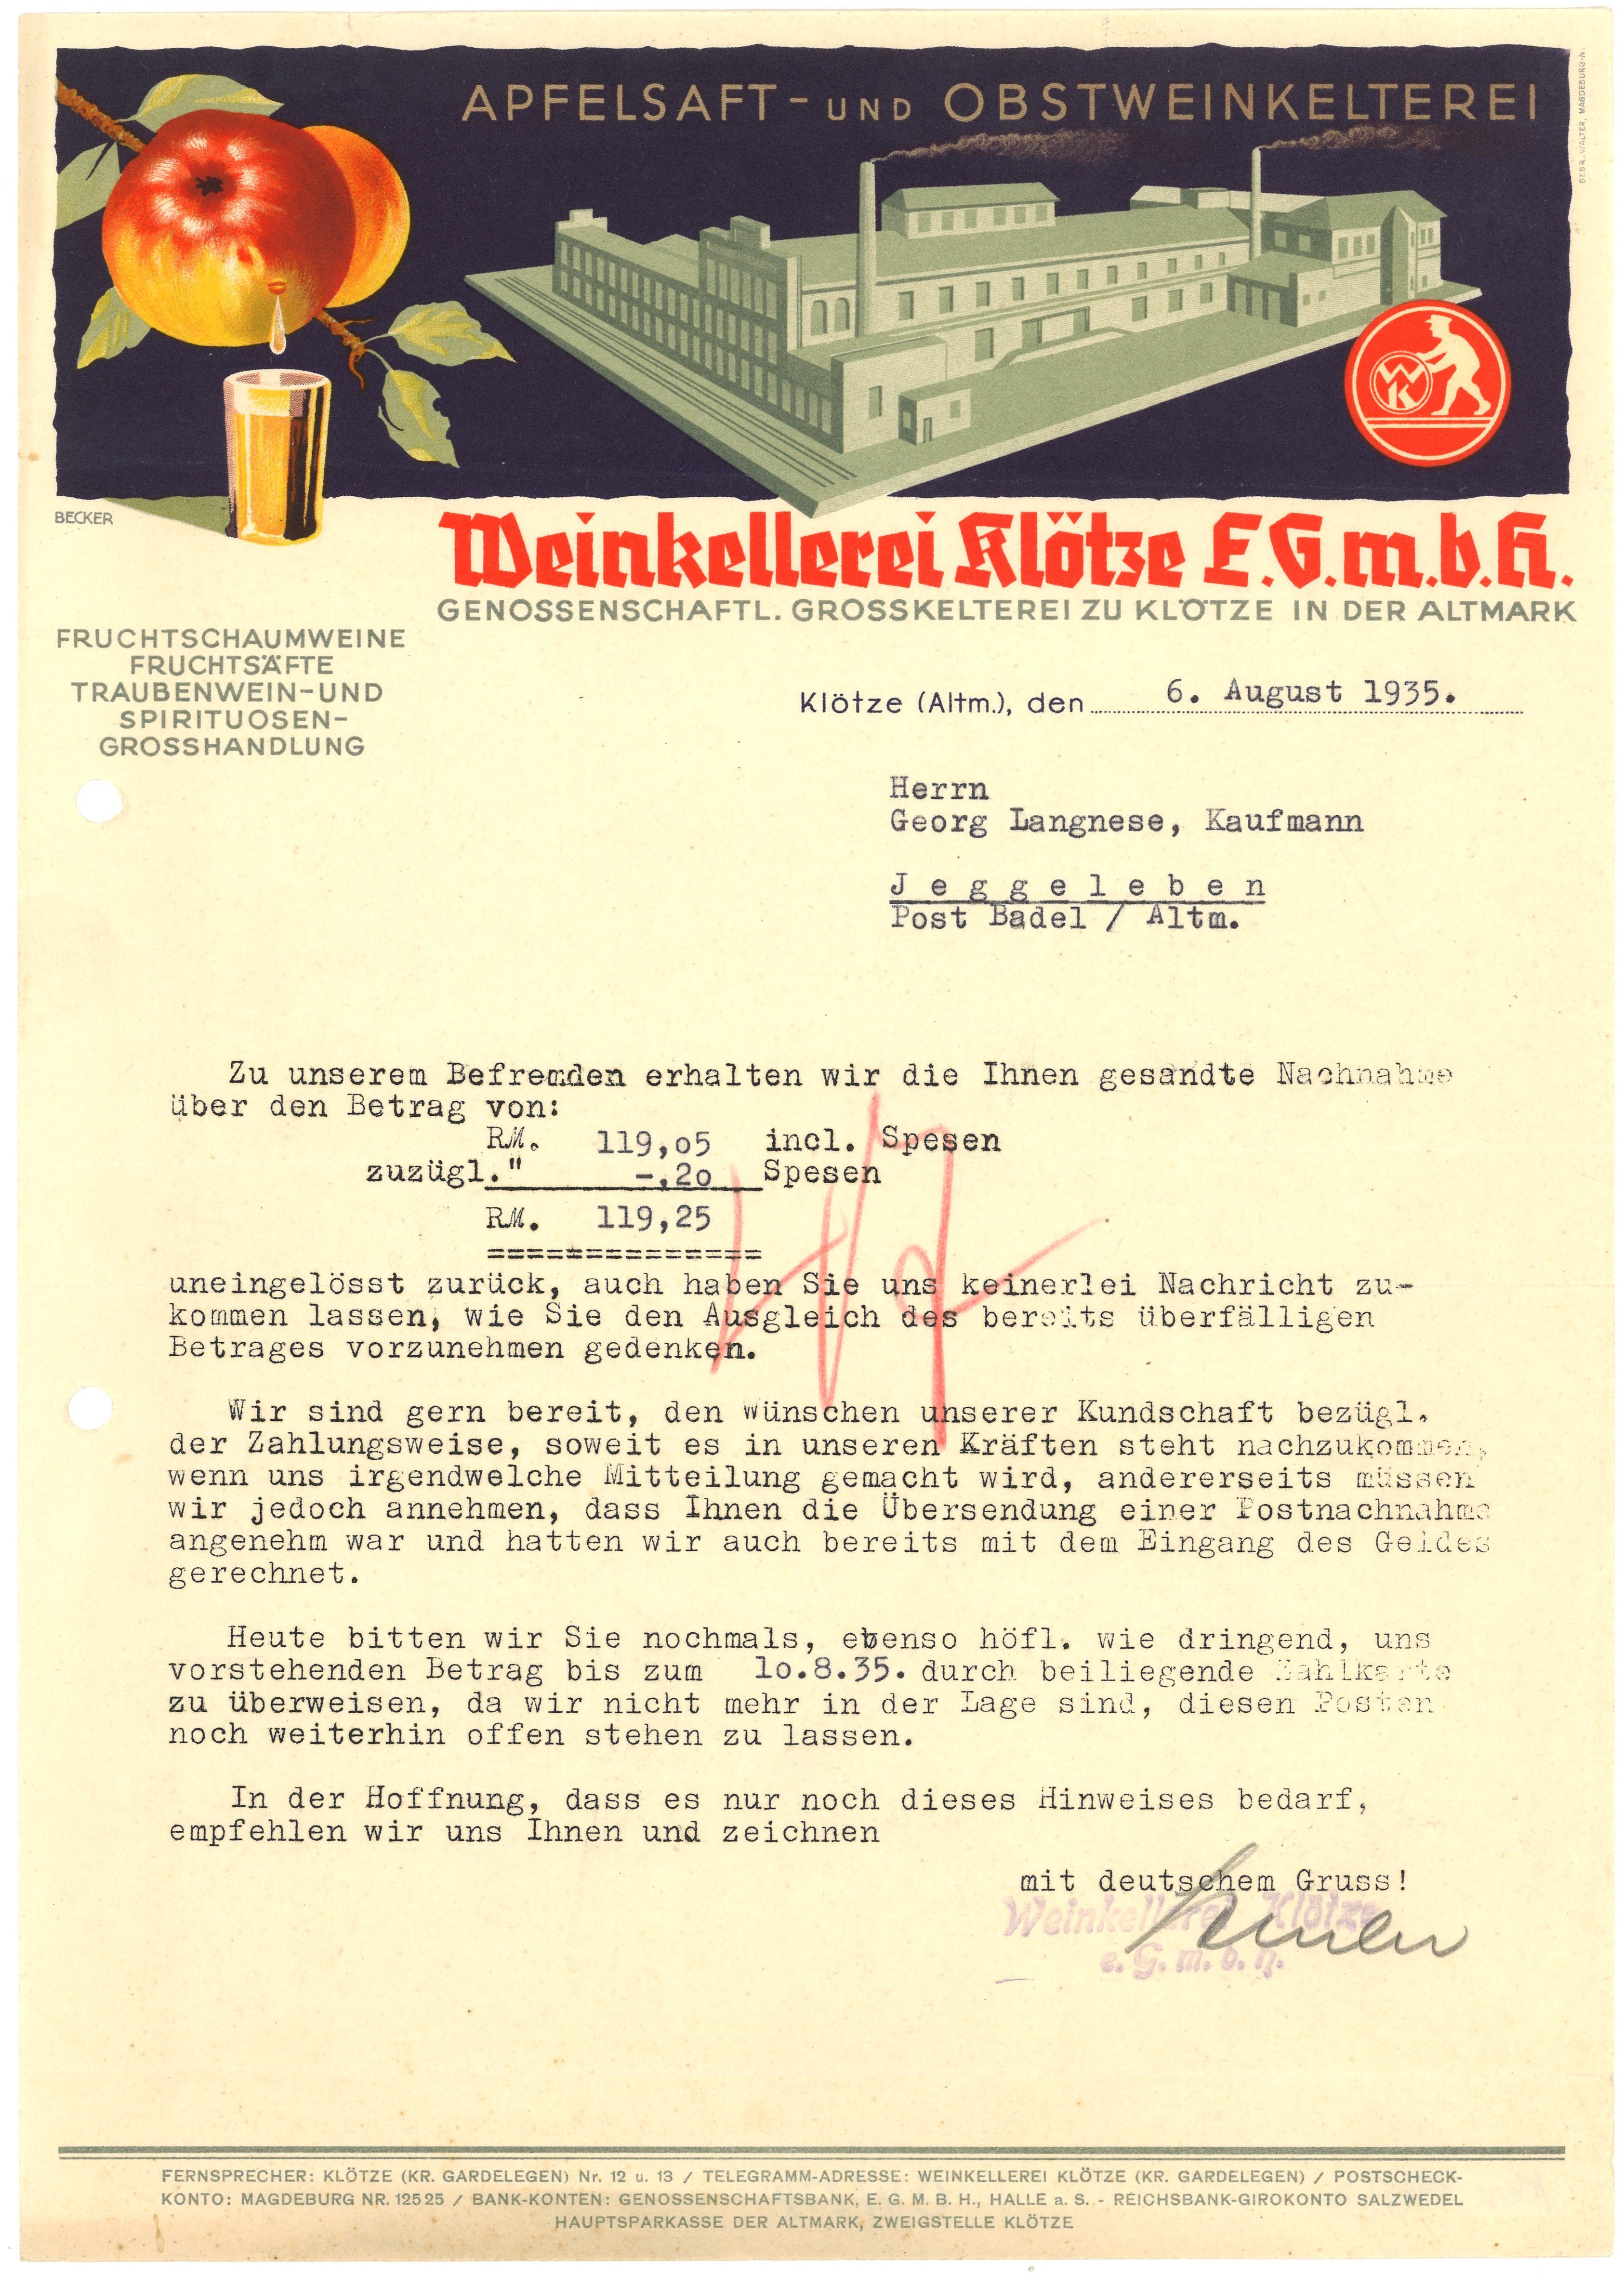 Mahnschreiben der Weinkellerei Klötze E.G.m.b.H. 1935 (Landesgeschichtliche Vereinigung für die Mark Brandenburg e.V., Archiv CC BY)